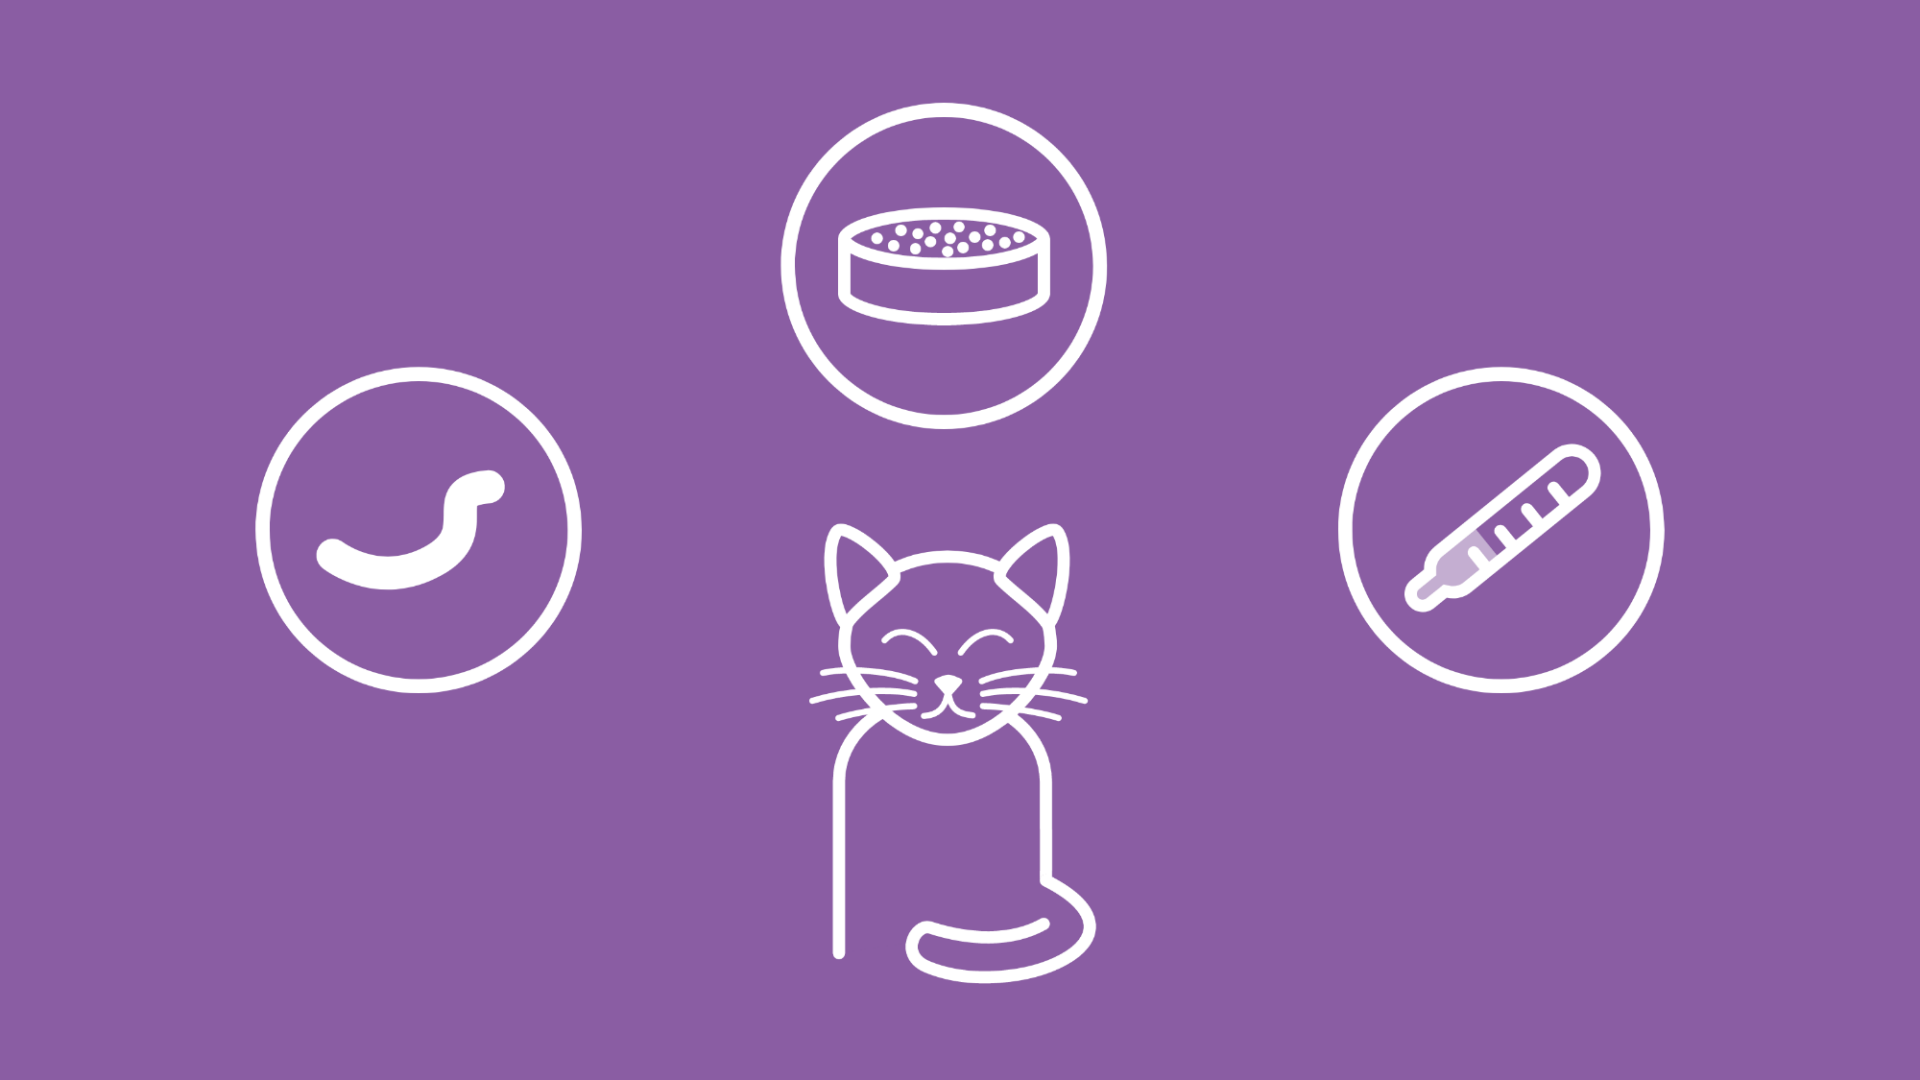  Icons für Würmer, Futter und eine Infektion, die die Ursachen für Durchfall bei Katzen aufzeigen. 